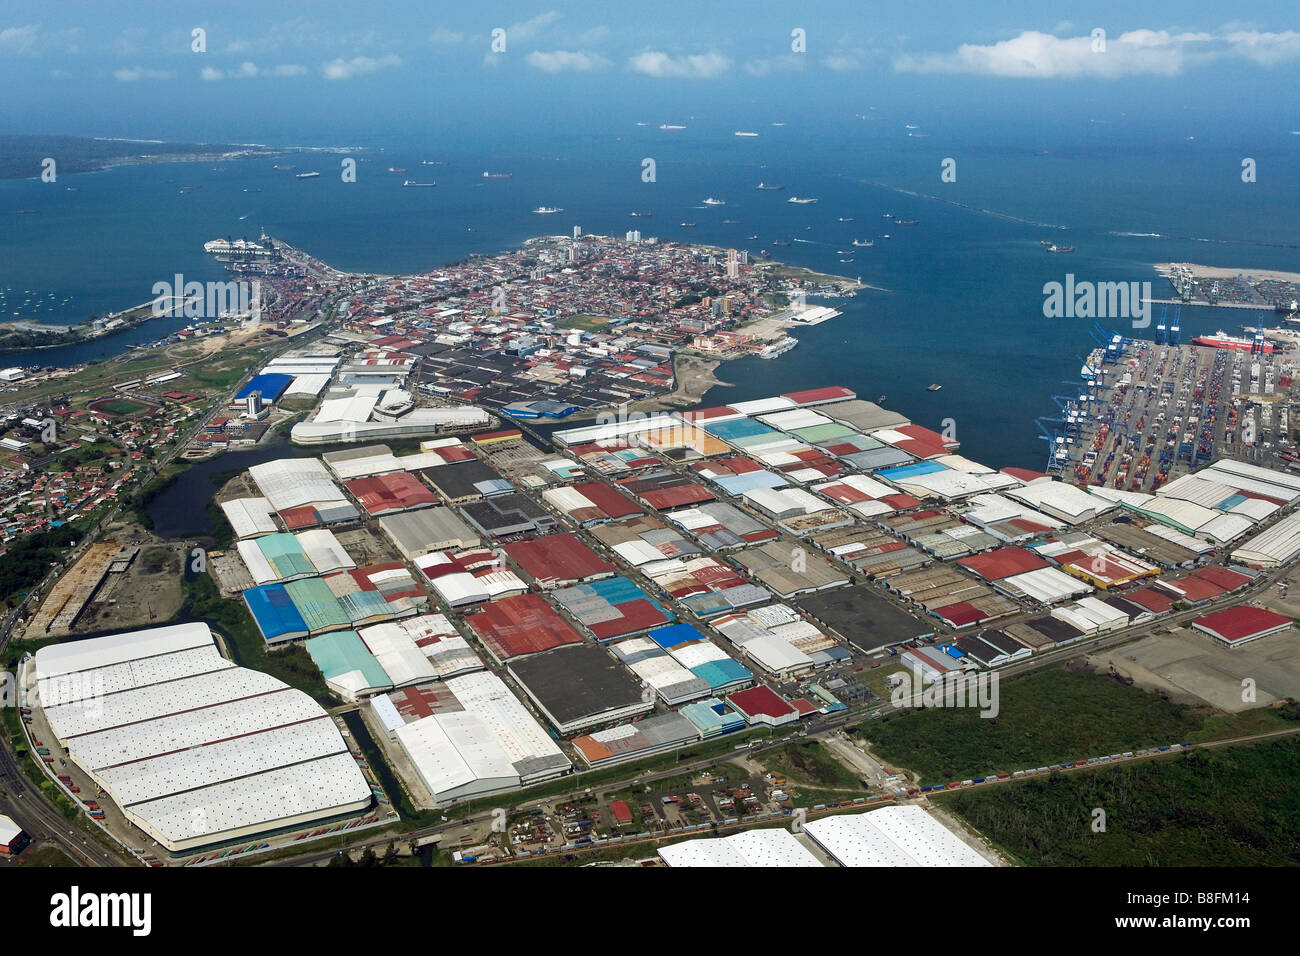 Au-dessus de l'antenne Zone de libre-échange Colon Cristobal Panama Atlantique Port entrée de canal de Panama Banque D'Images